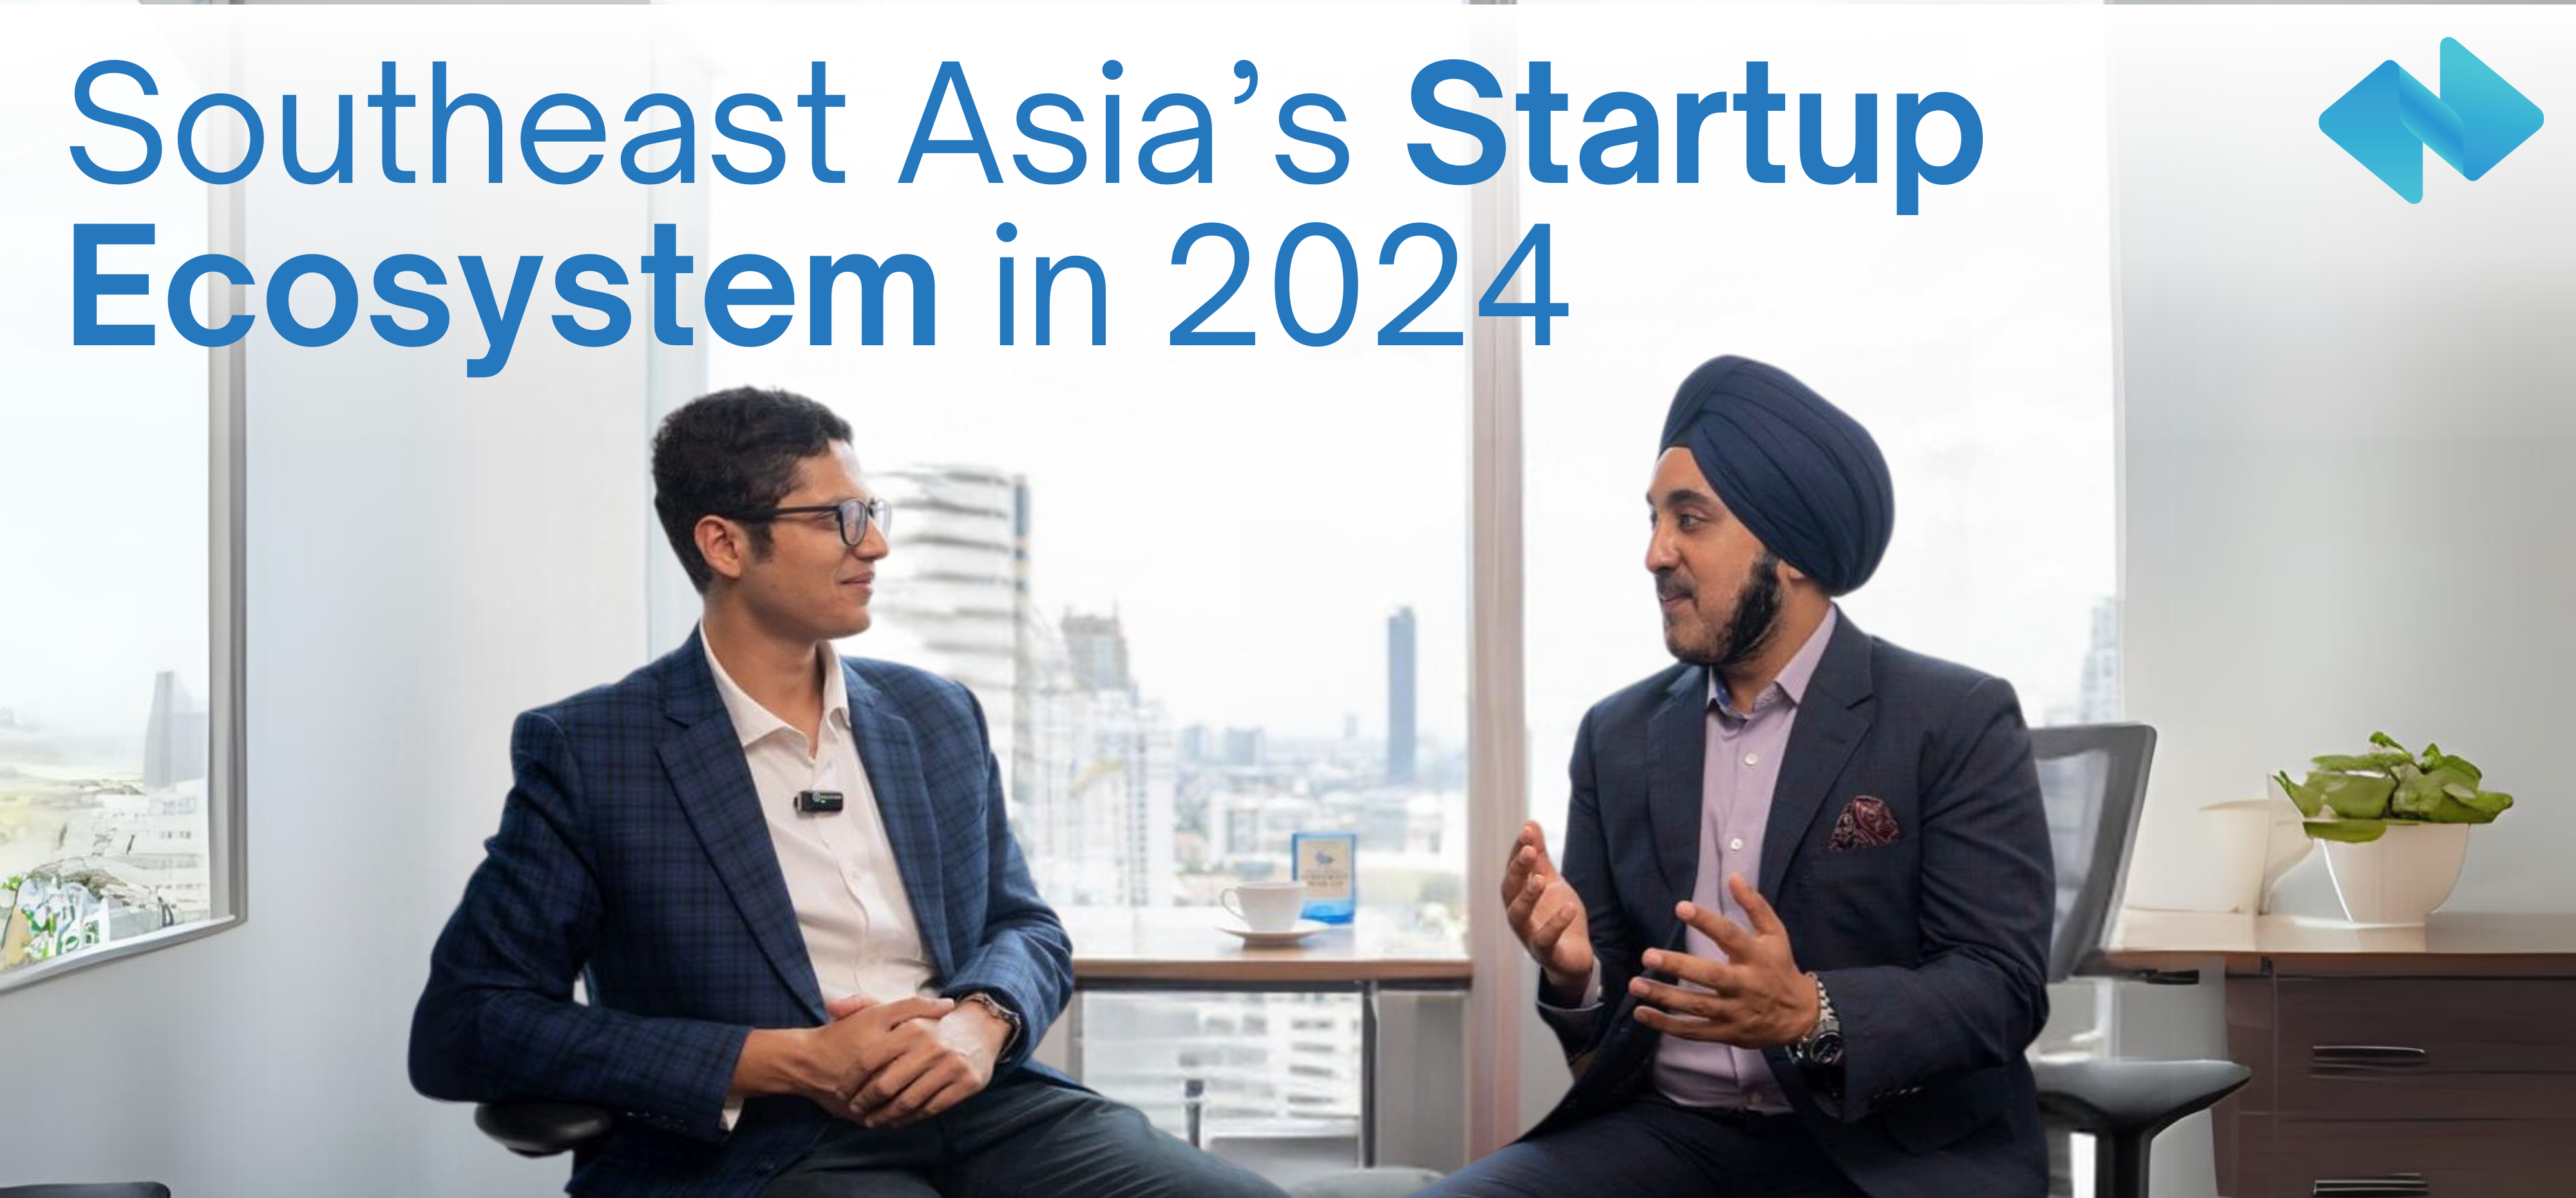 Gagan Singh: Entrepreneurship Journey & The Regional Startup Scene